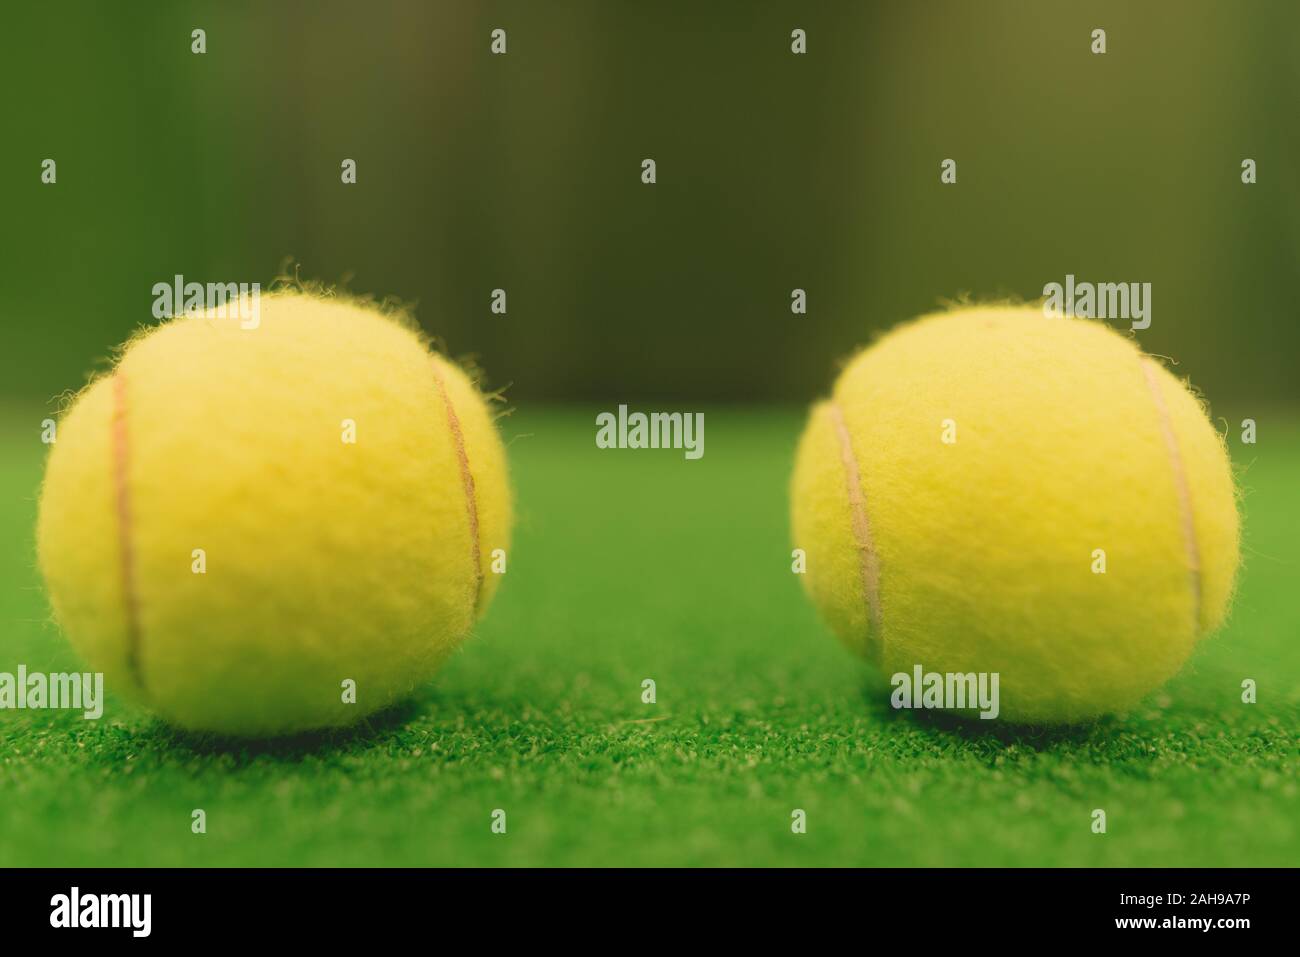 Portrait von Tennisbällen auf grüne Oberfläche Stockfoto